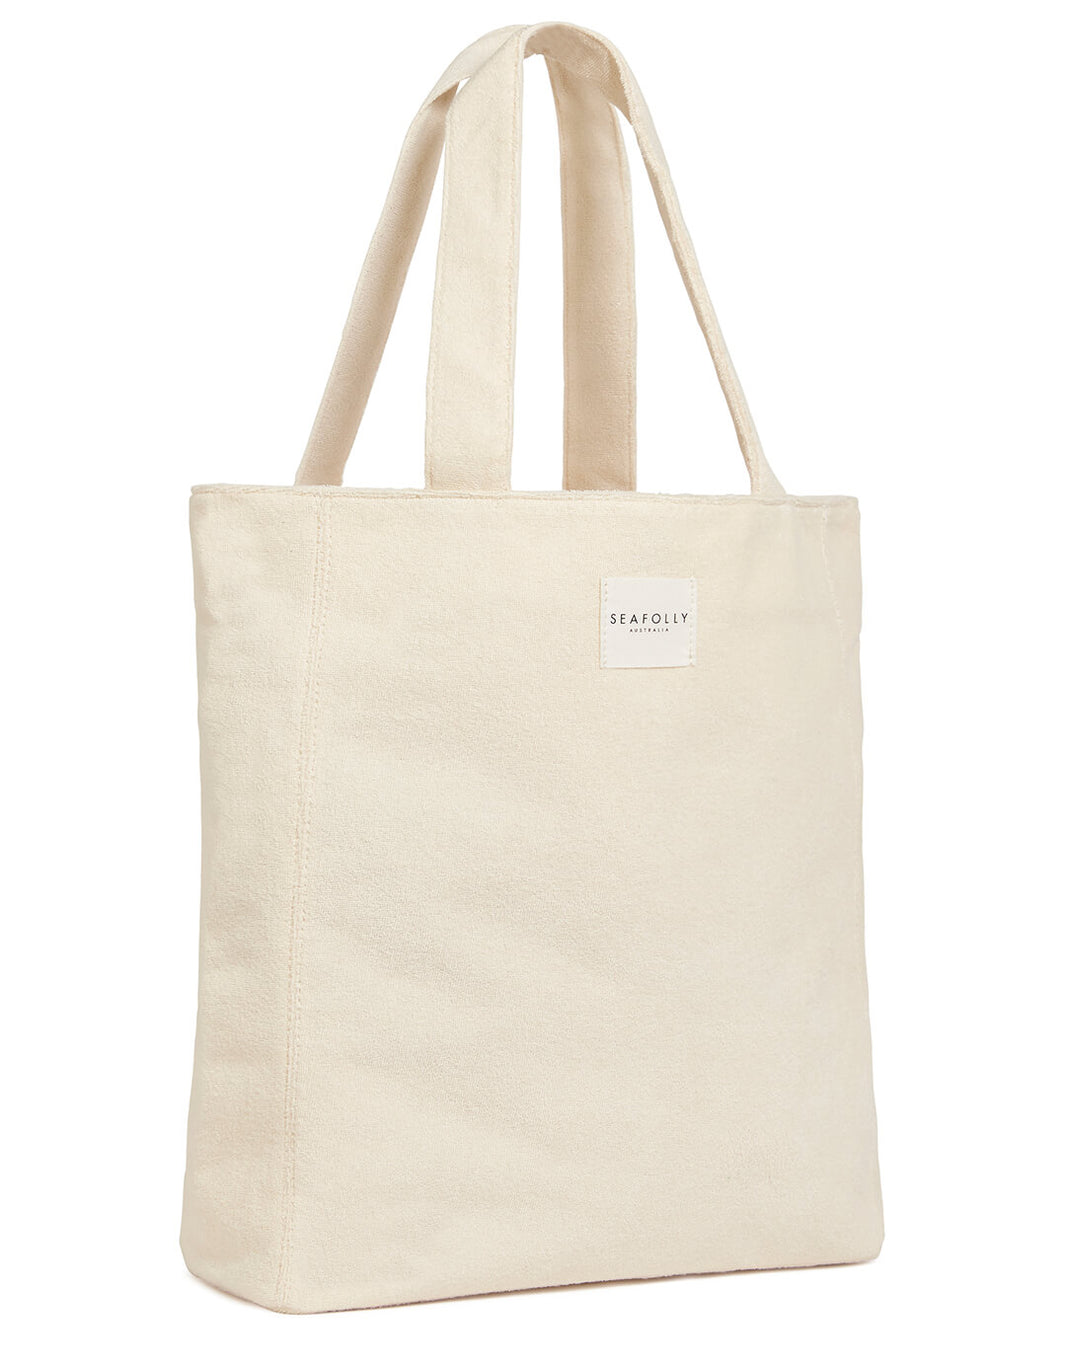 Beach Bags | Designer Beach Bags | Simply Beach UK